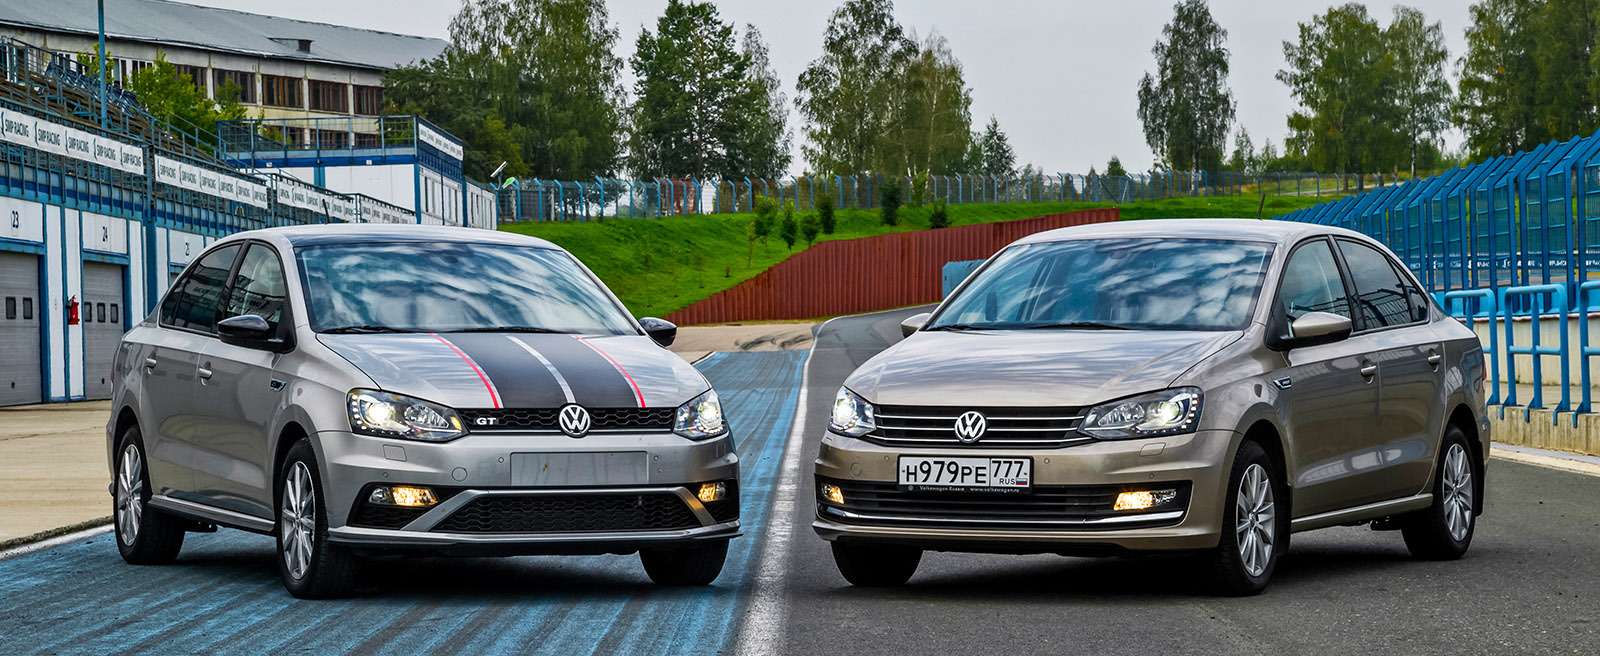 Skoda Rapid или Volkswagen Polo — ЗР помогает сделать выбор — фото 792225